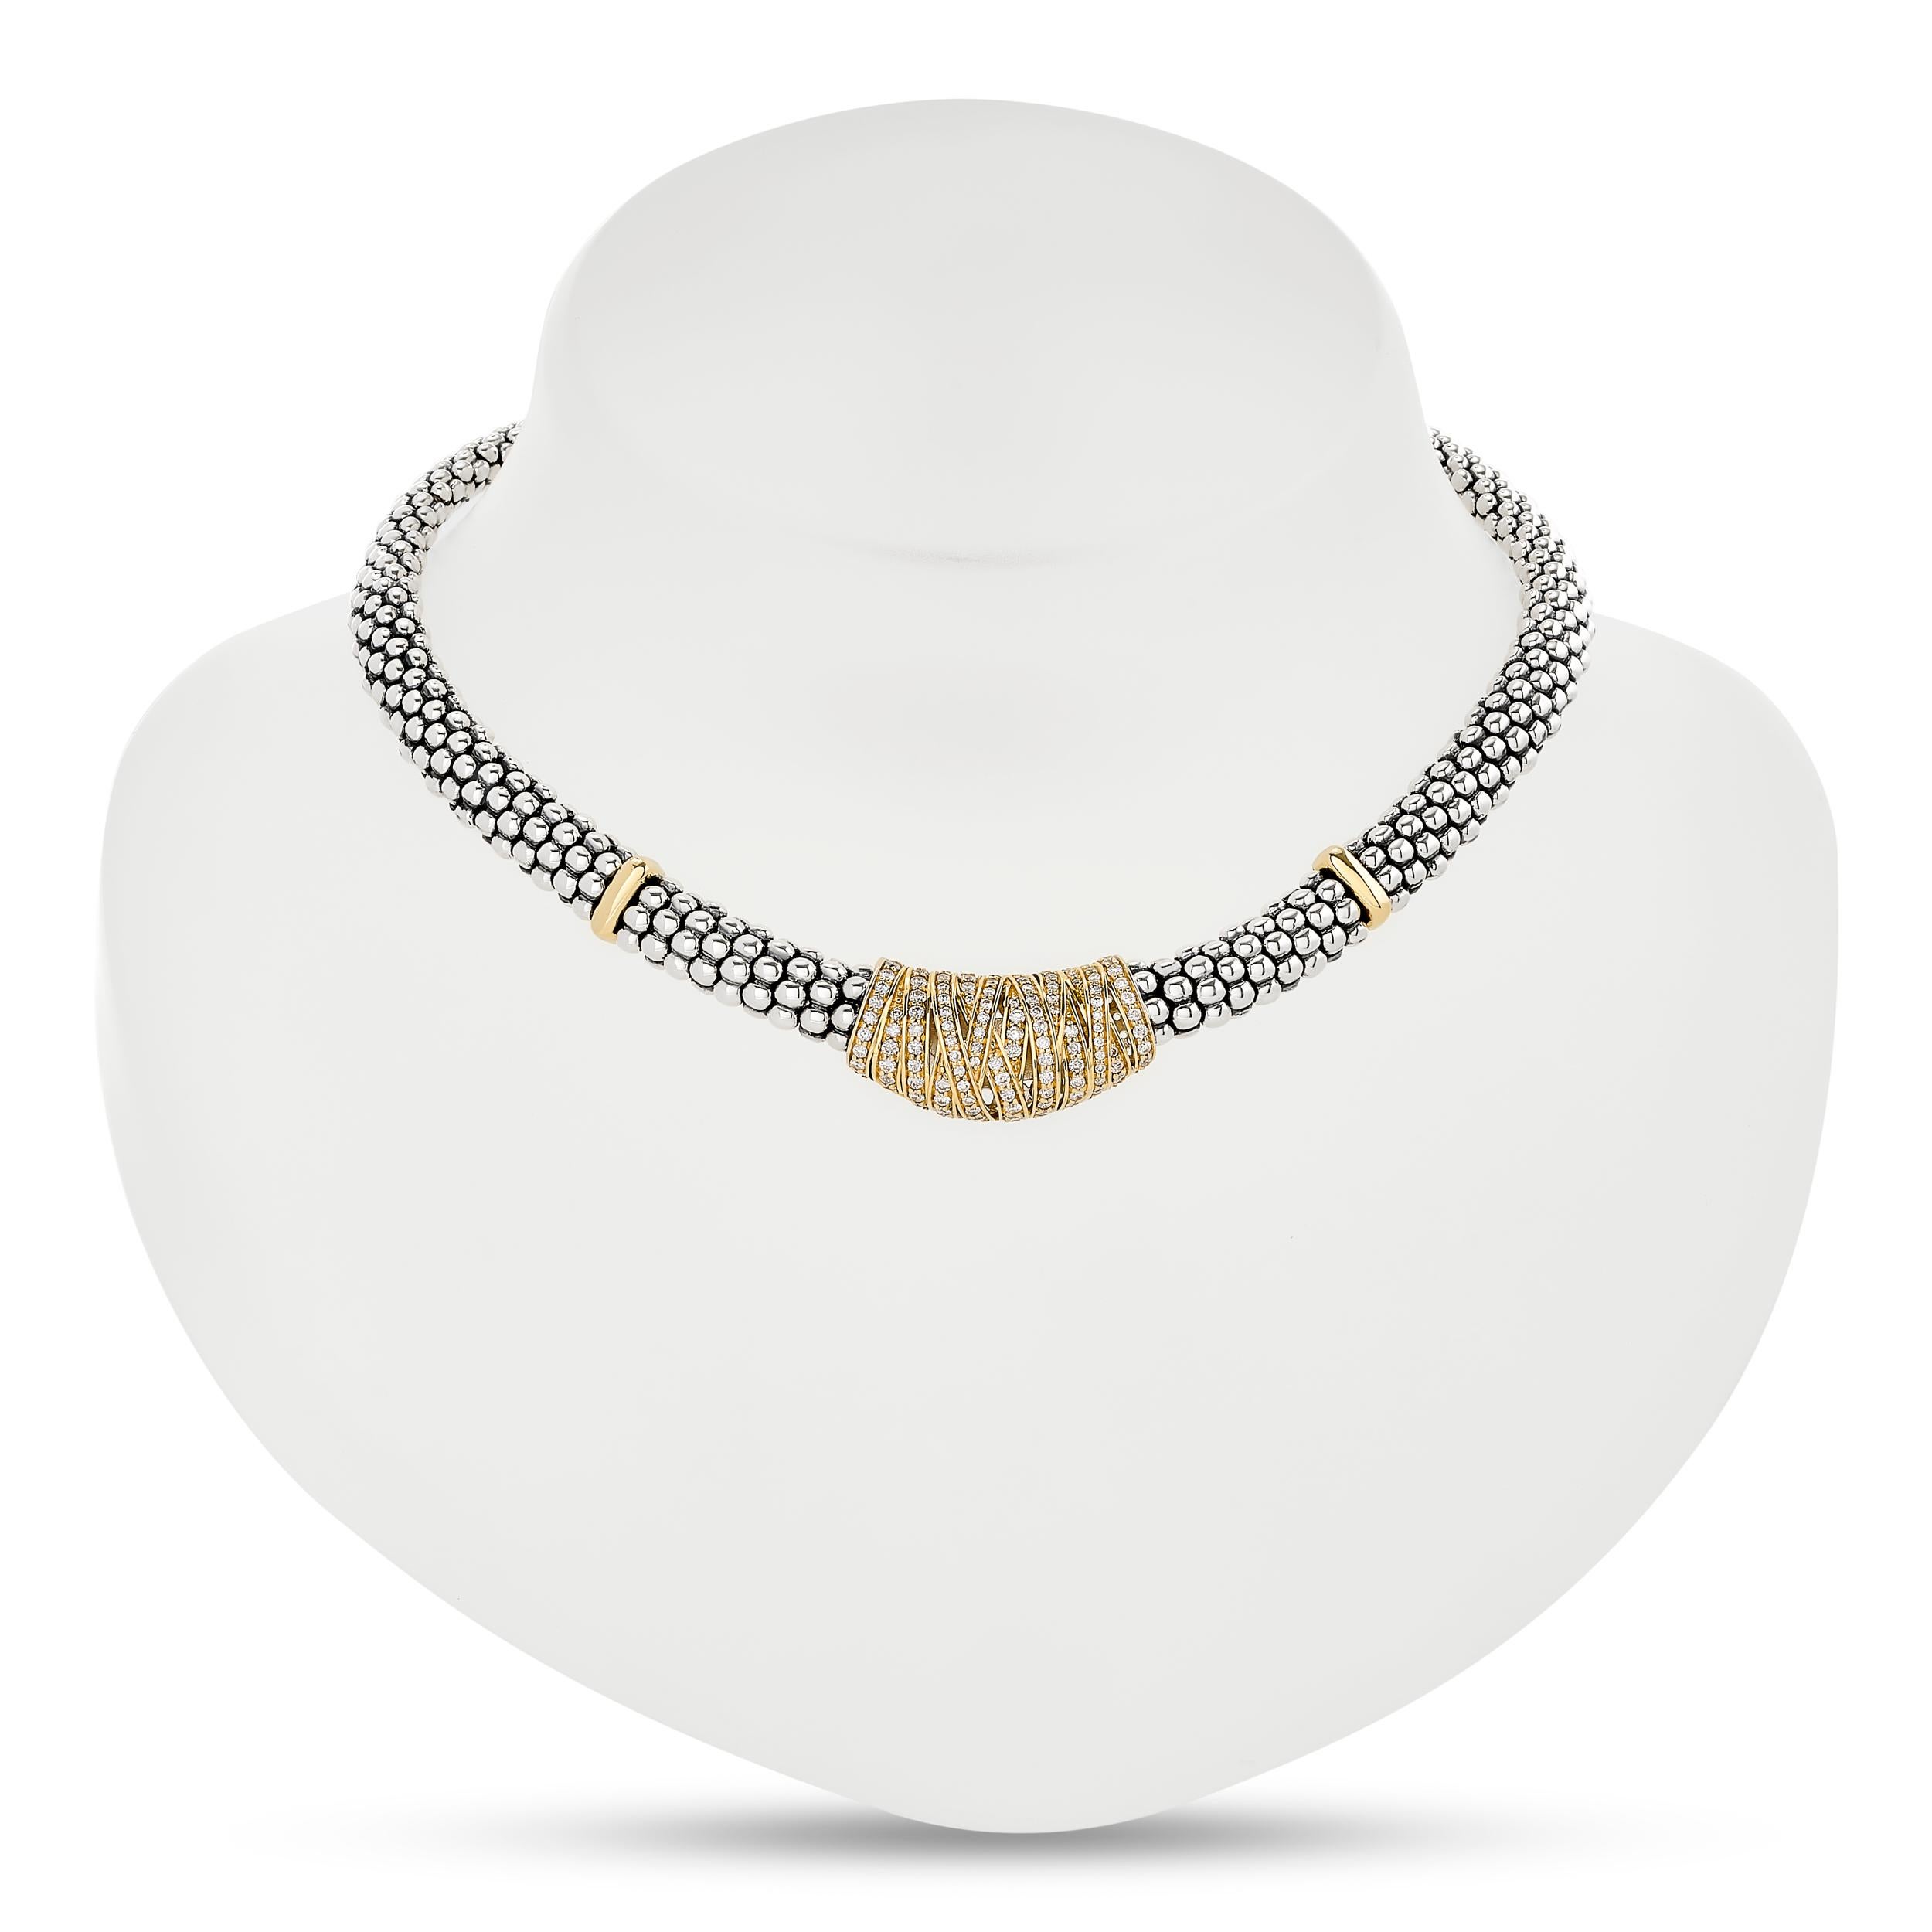 Kaviar-Halskette von LAGOS aus Silber und 18 Karat Gelbgold, verziert mit schillernden Diamanten.
133 runde Diamanten mit einem Gewicht von ca. 1,00 Karat; die Diamanten haben die Farbe H-I und die Reinheit SI1-I1.

Ungefähr 15 Zoll.
Halskette ist